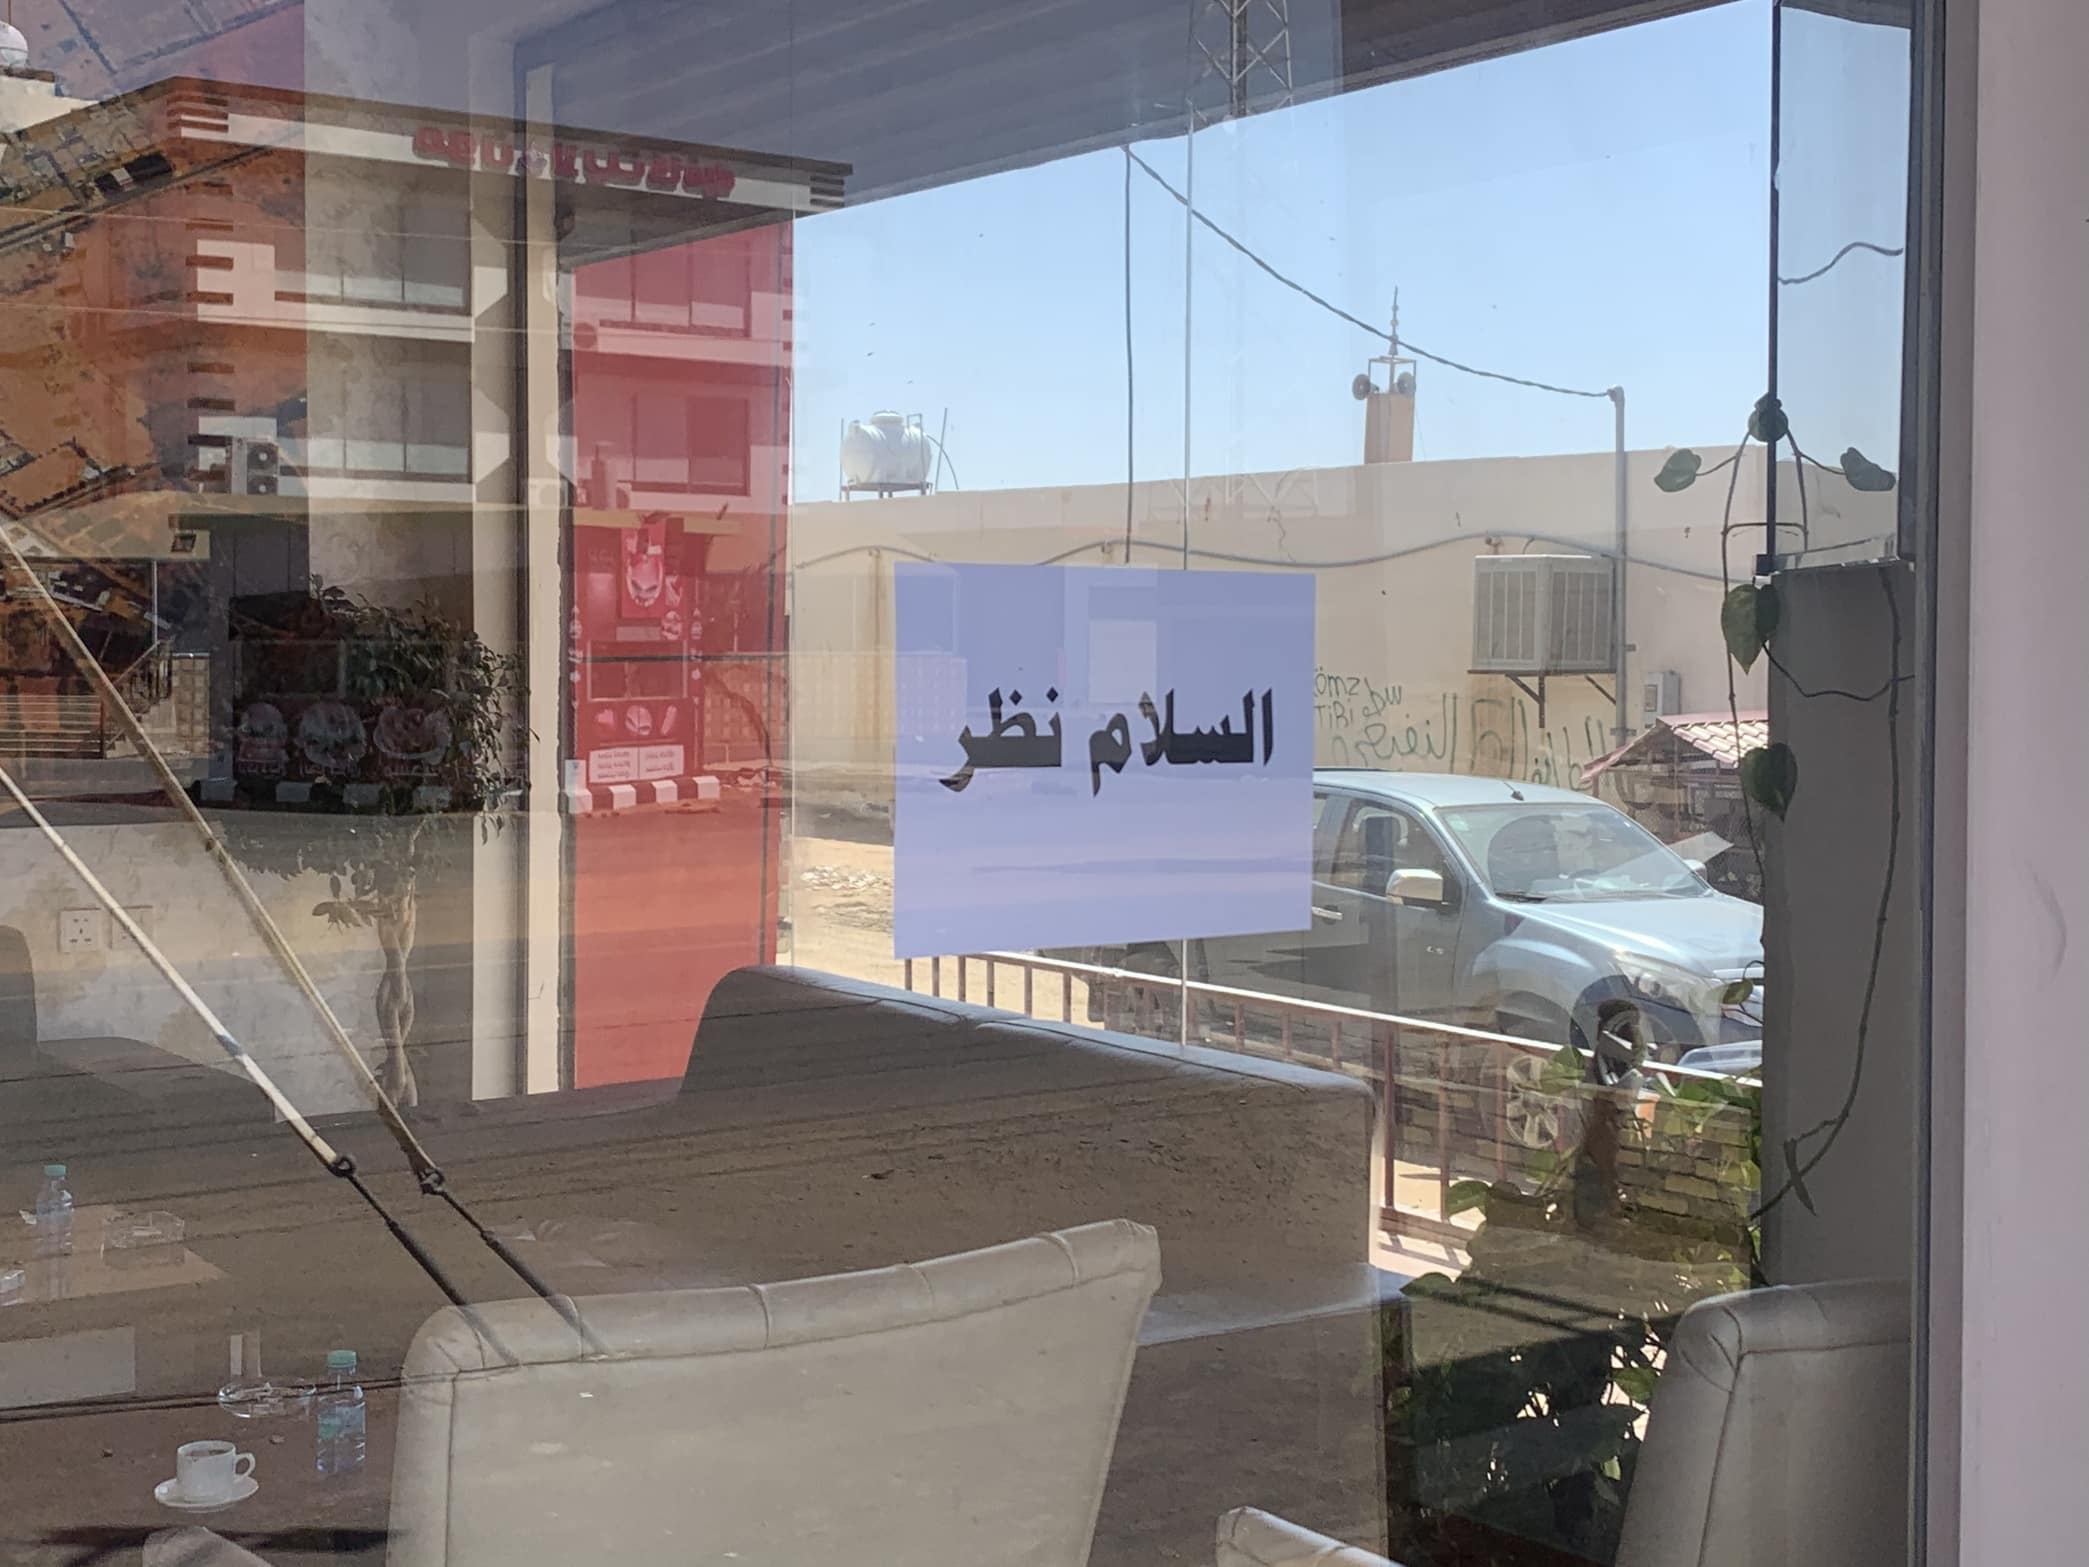 بالصور.. مواطن يضع عبارة “السلام نظر” على مدخل مكتبه